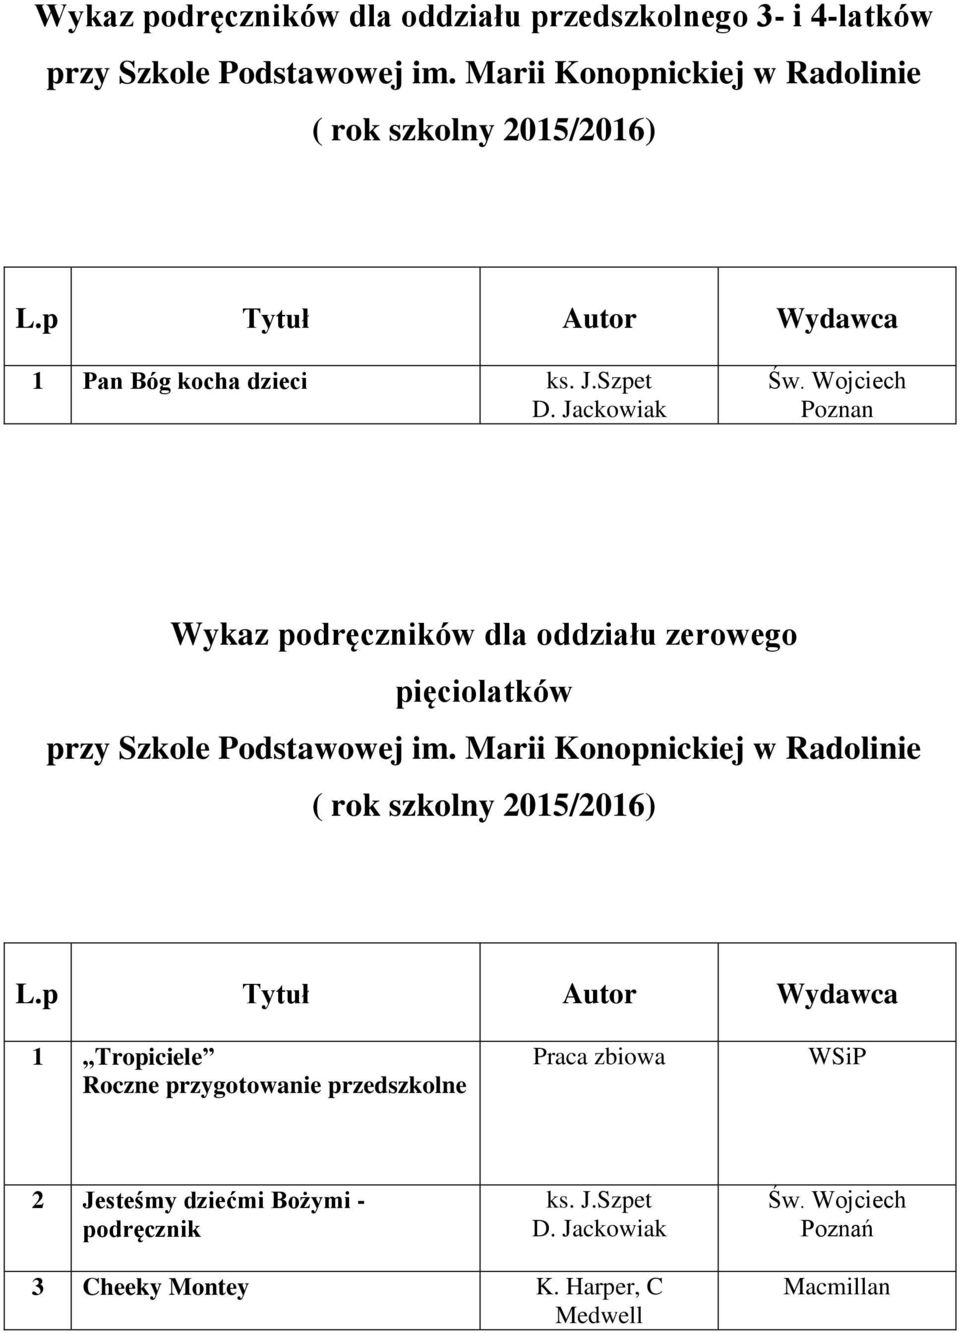 Wojciech Poznan Wykaz podręczników dla oddziału zerowego pięciolatków 1 Tropiciele